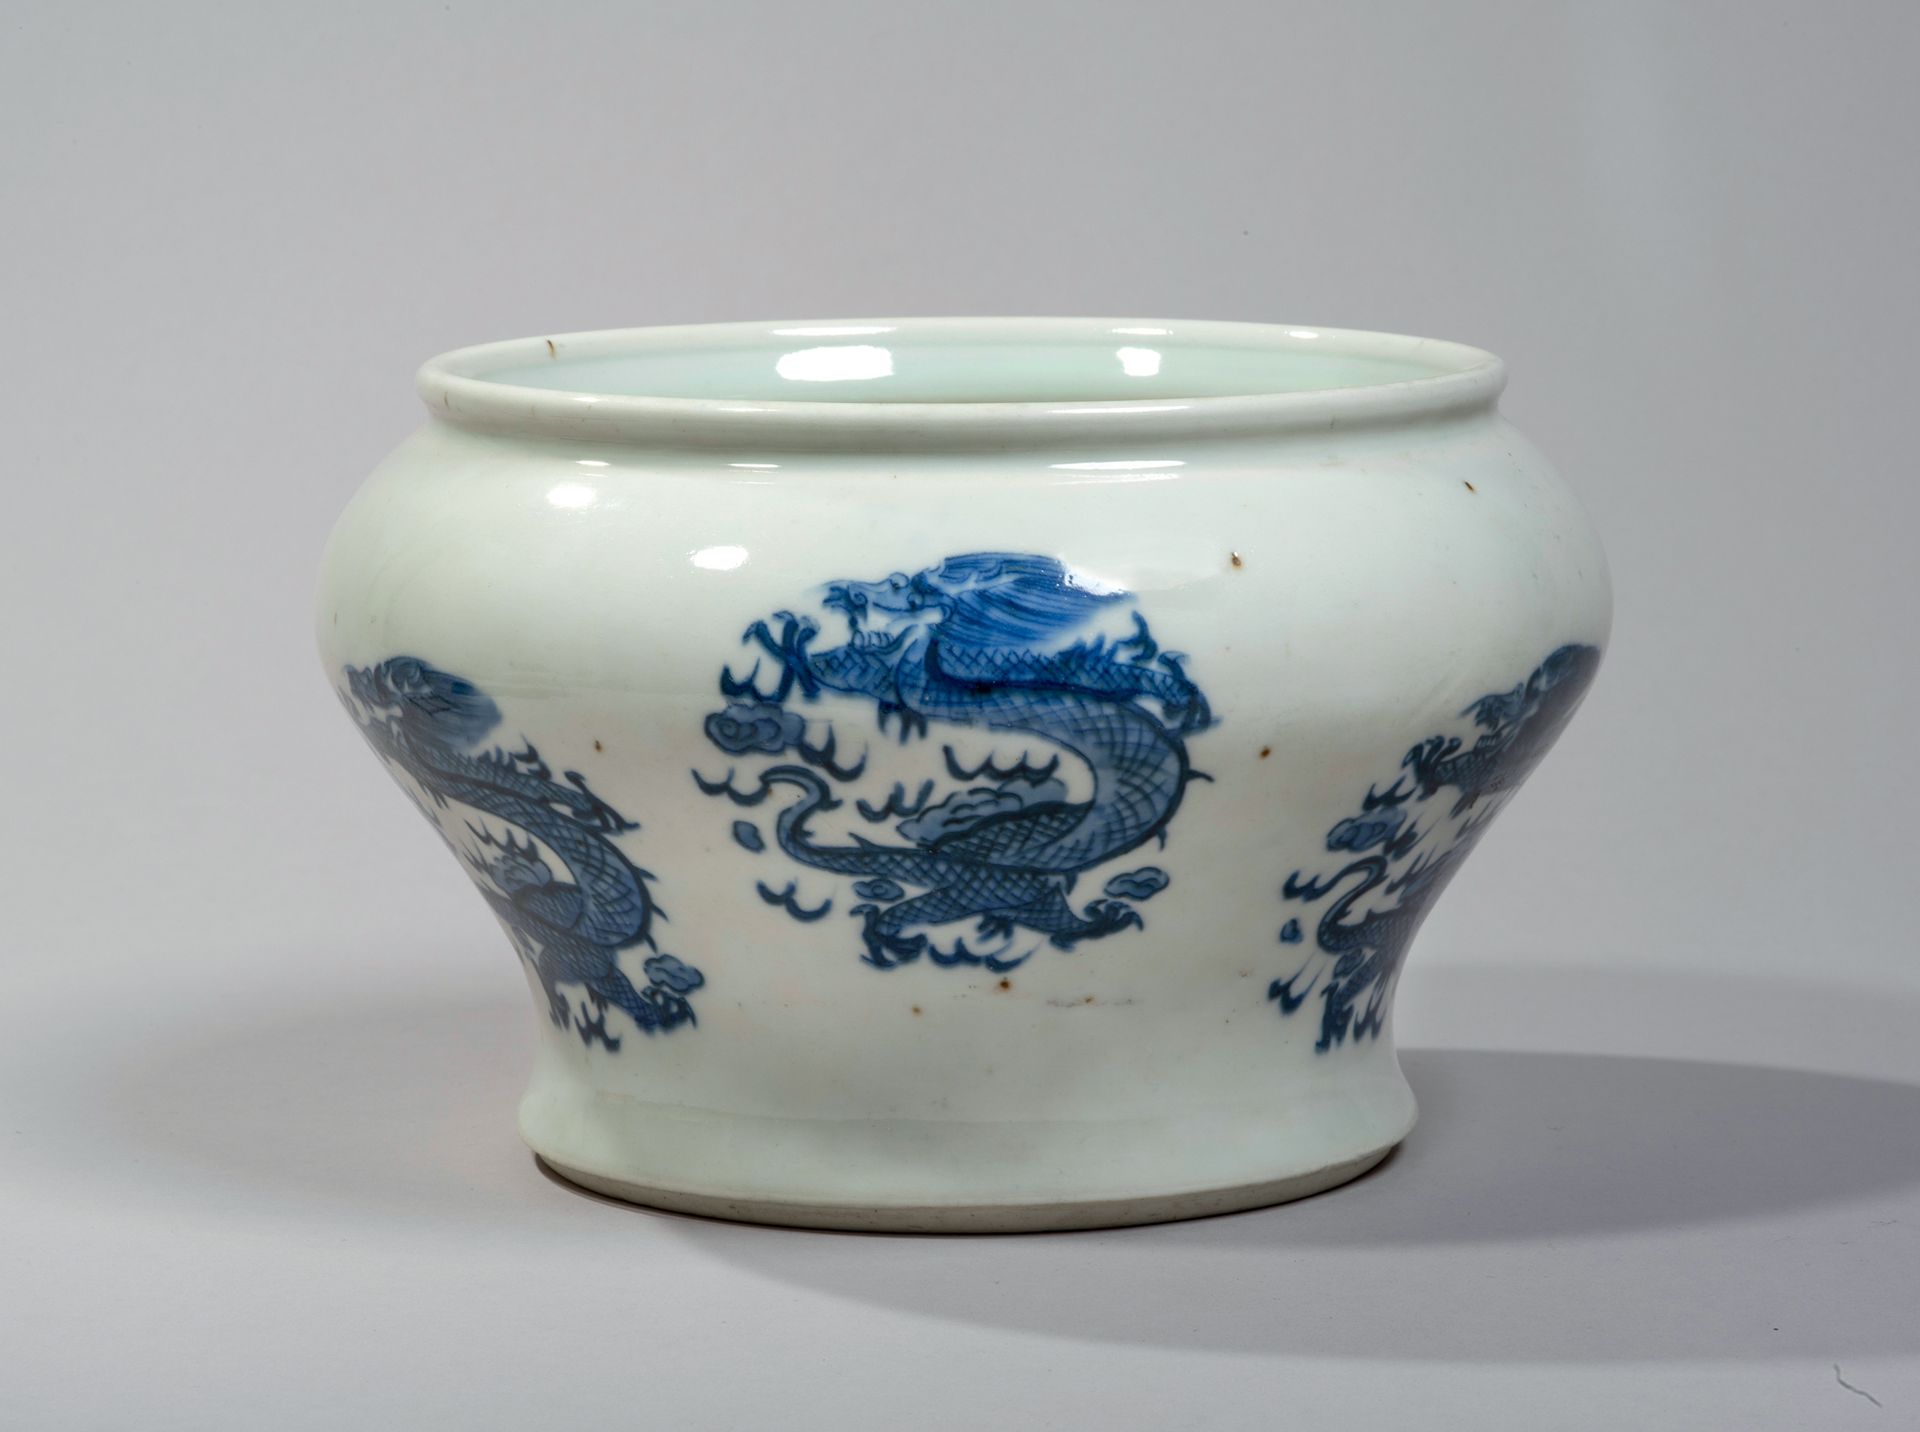 VIETNAM, Hue - XIXe siècle 
瓷器柱形花瓶，釉下青花饰有龙形图案。
，高13.5厘米。